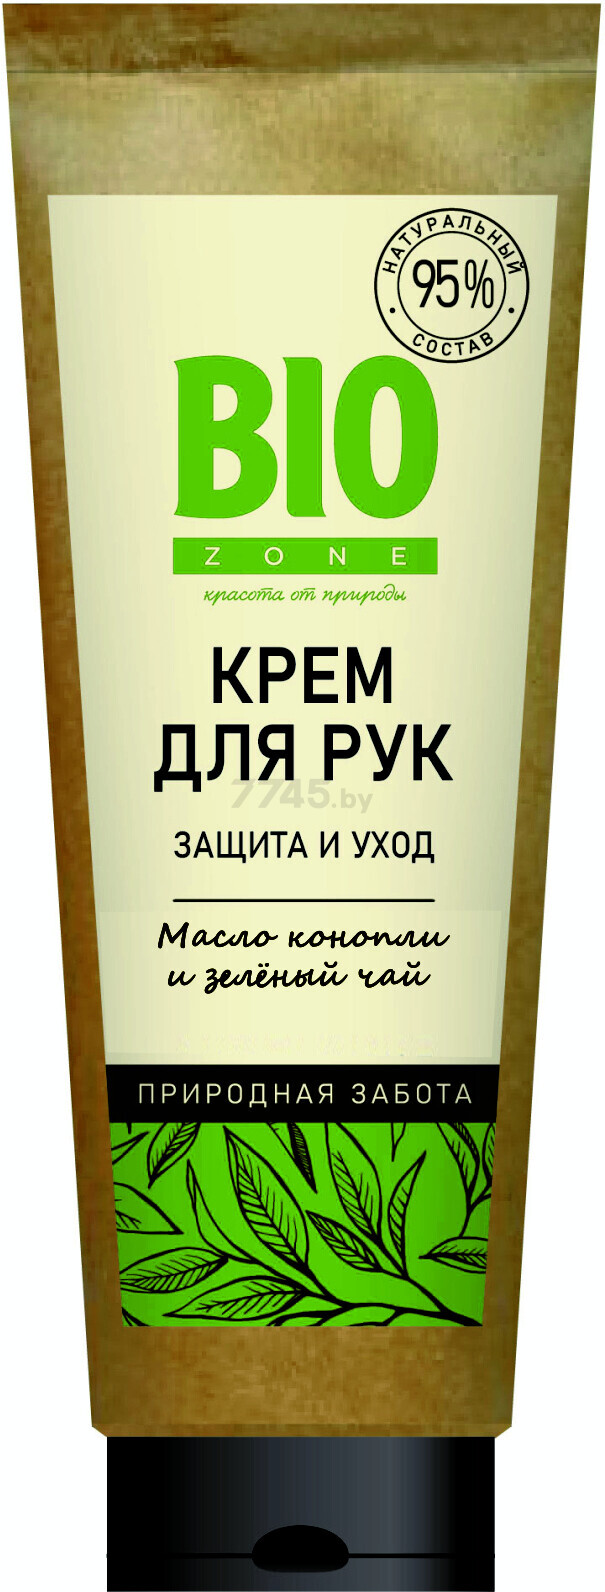 Крем для рук BIOZONE Защита и уход с маслом конопли и зеленым чаем 75 мл (114961)